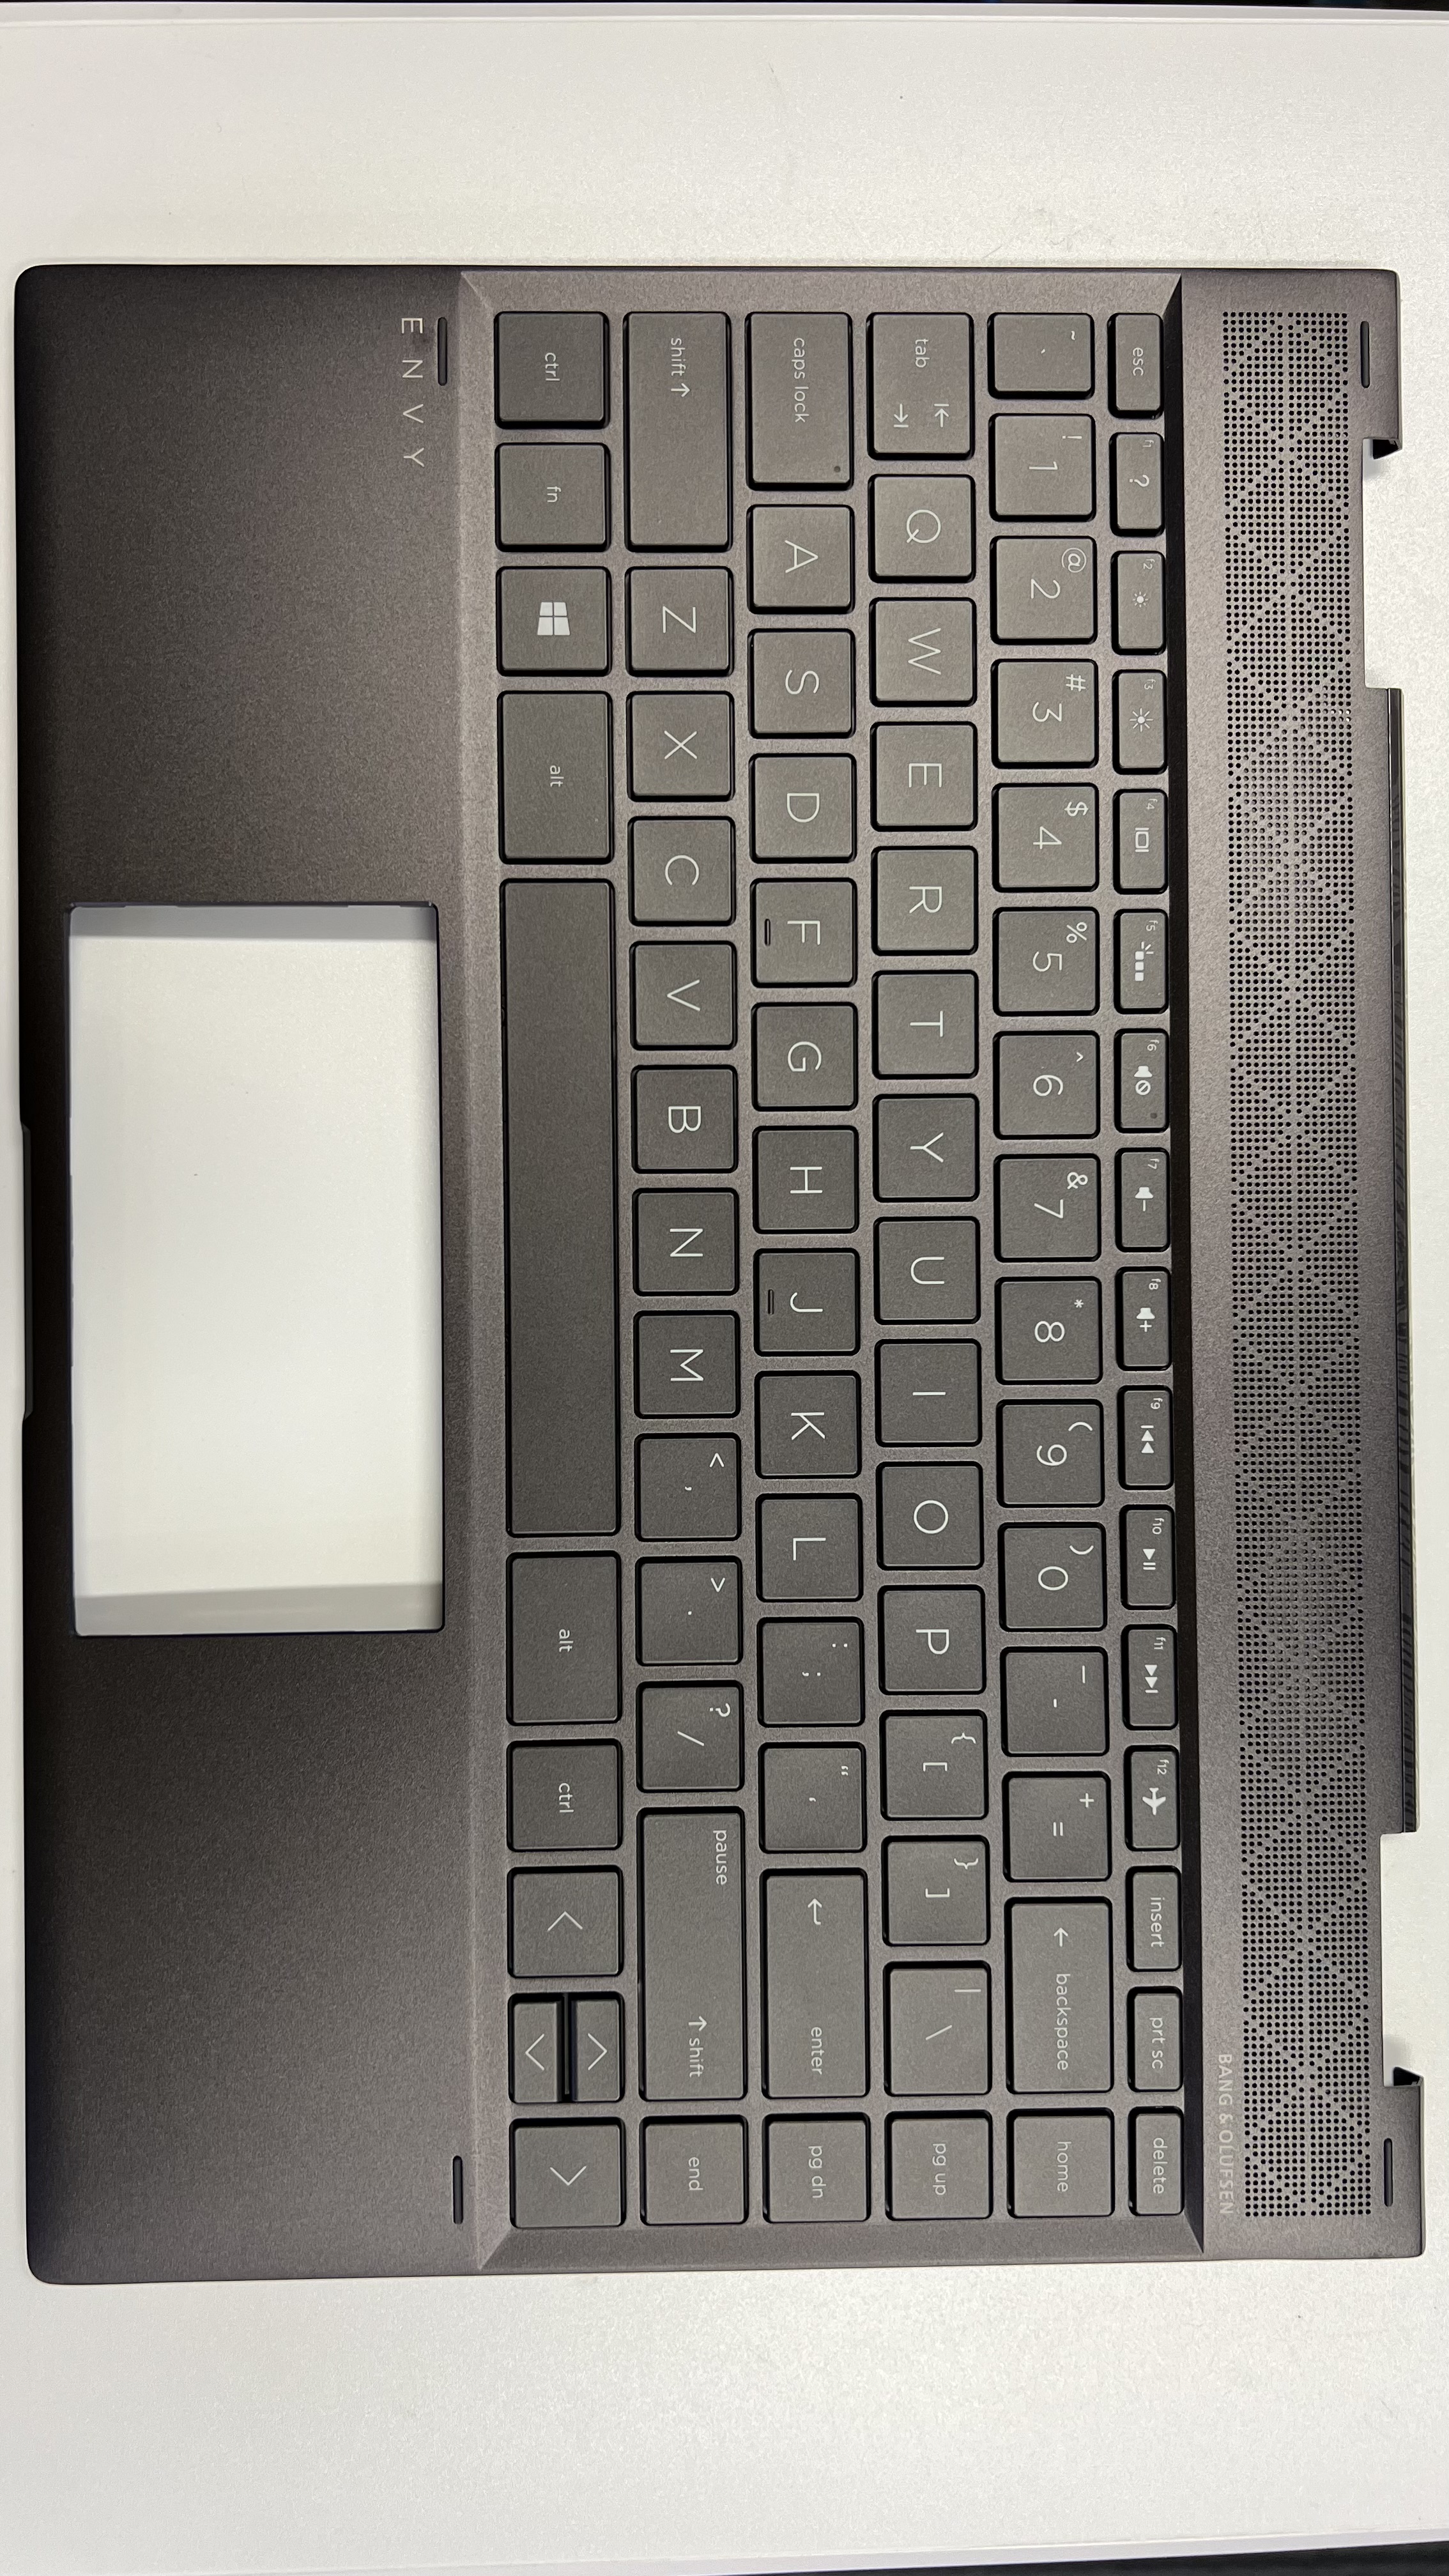 HP ENVY x360 Convertible 13-ag0003AU (4KT89PA) Keyboard L19586-001